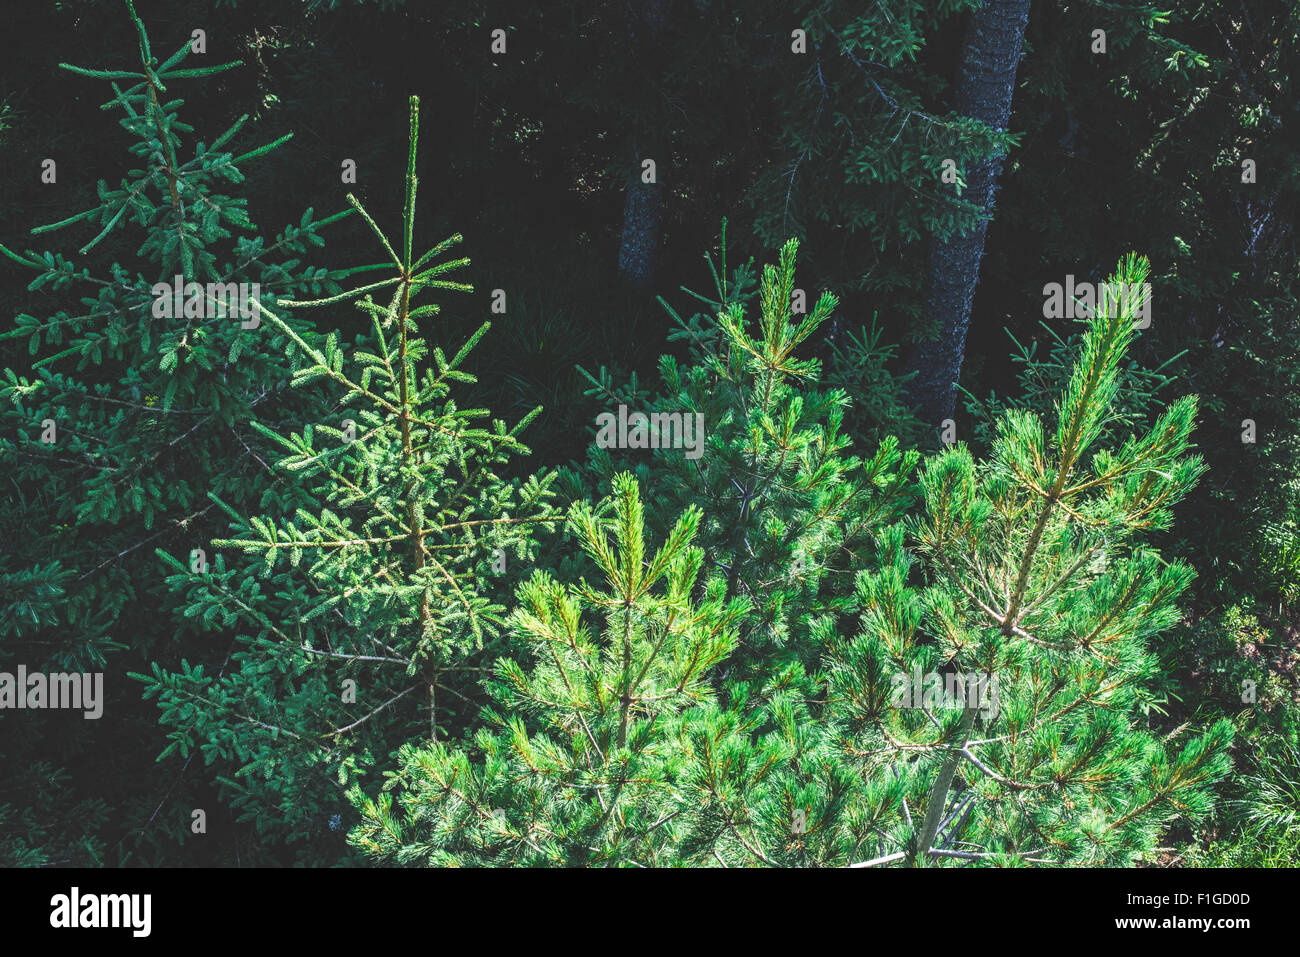 Green fir forest landscape Stock Photo